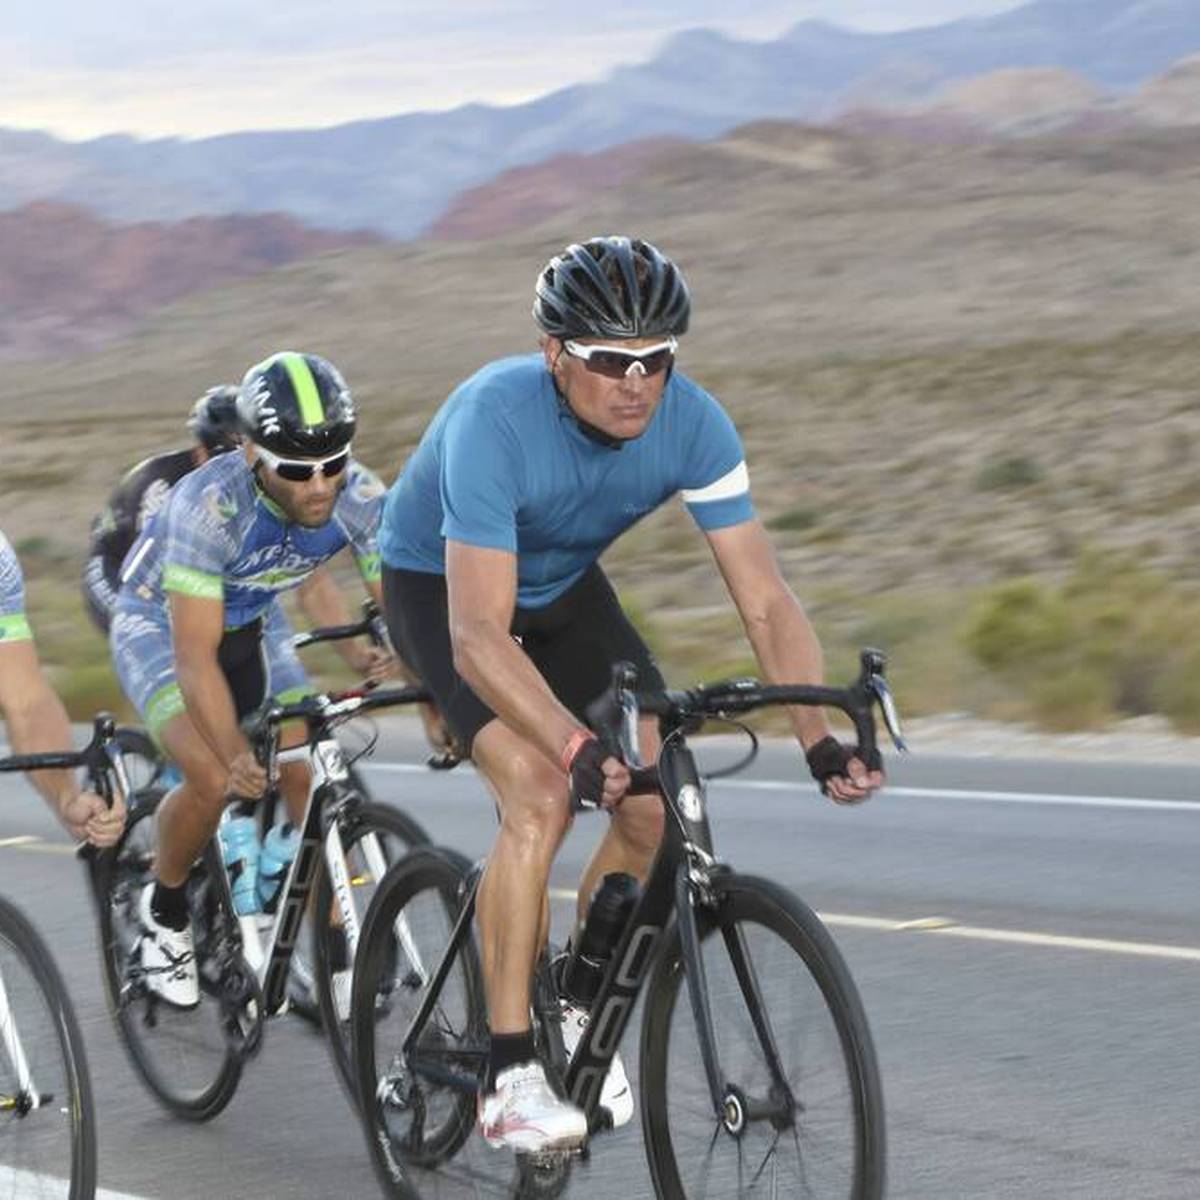 Jan Ullrich organisiert eine mehrtägige Radtour für Sportbegeisterte. Höhepunkt der Fahrt ist der Anstieg auf den Mont Ventoux. Dafür müssen die Teilnehmer jedoch tief in die Tasche greifen.